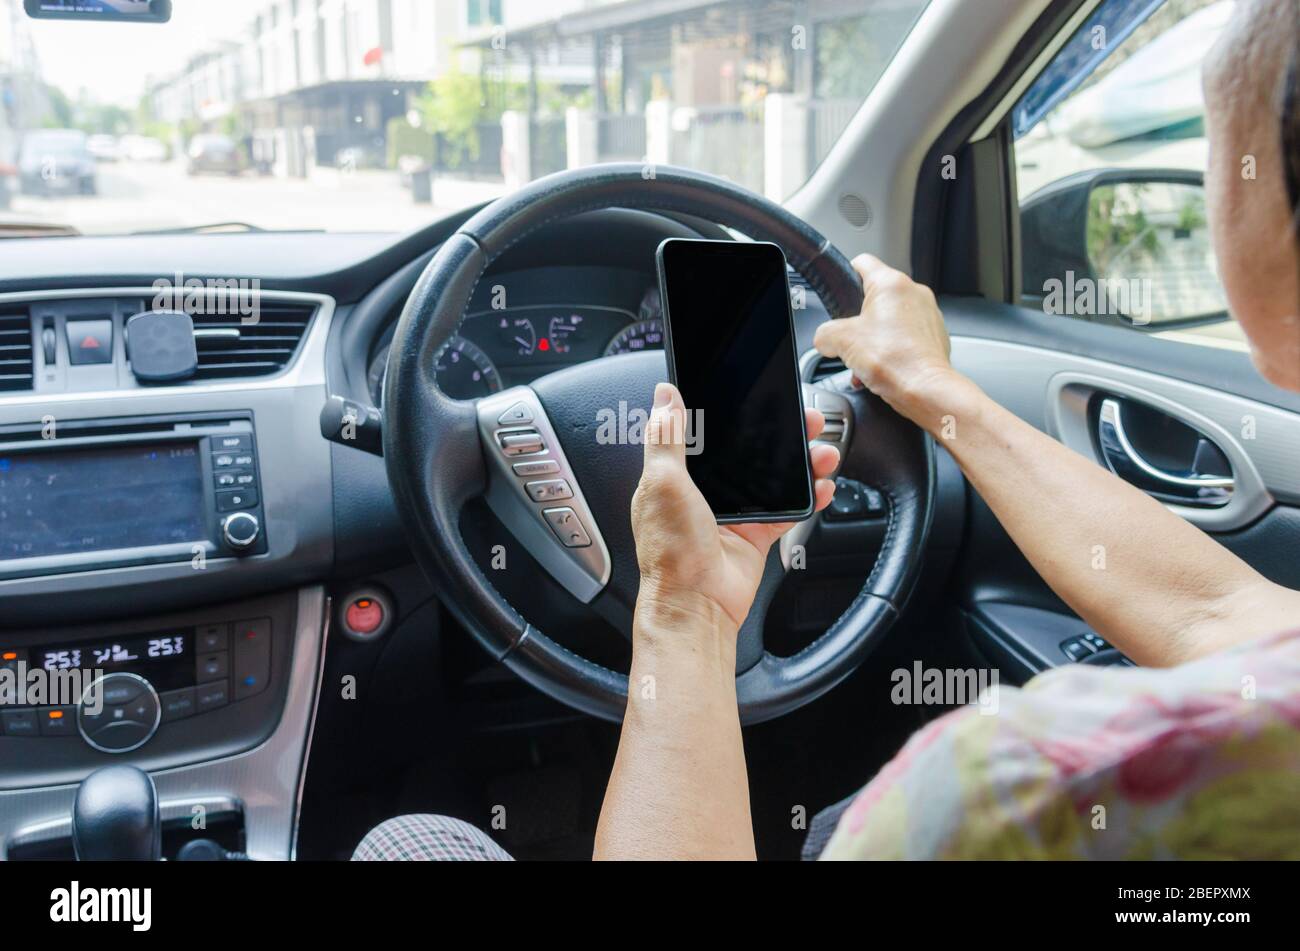 Frauenhand, die ein Mobiltelefon im Auto hält.mit dem Handy im Auto.Clipping Pfad Smartphone. Stockfoto